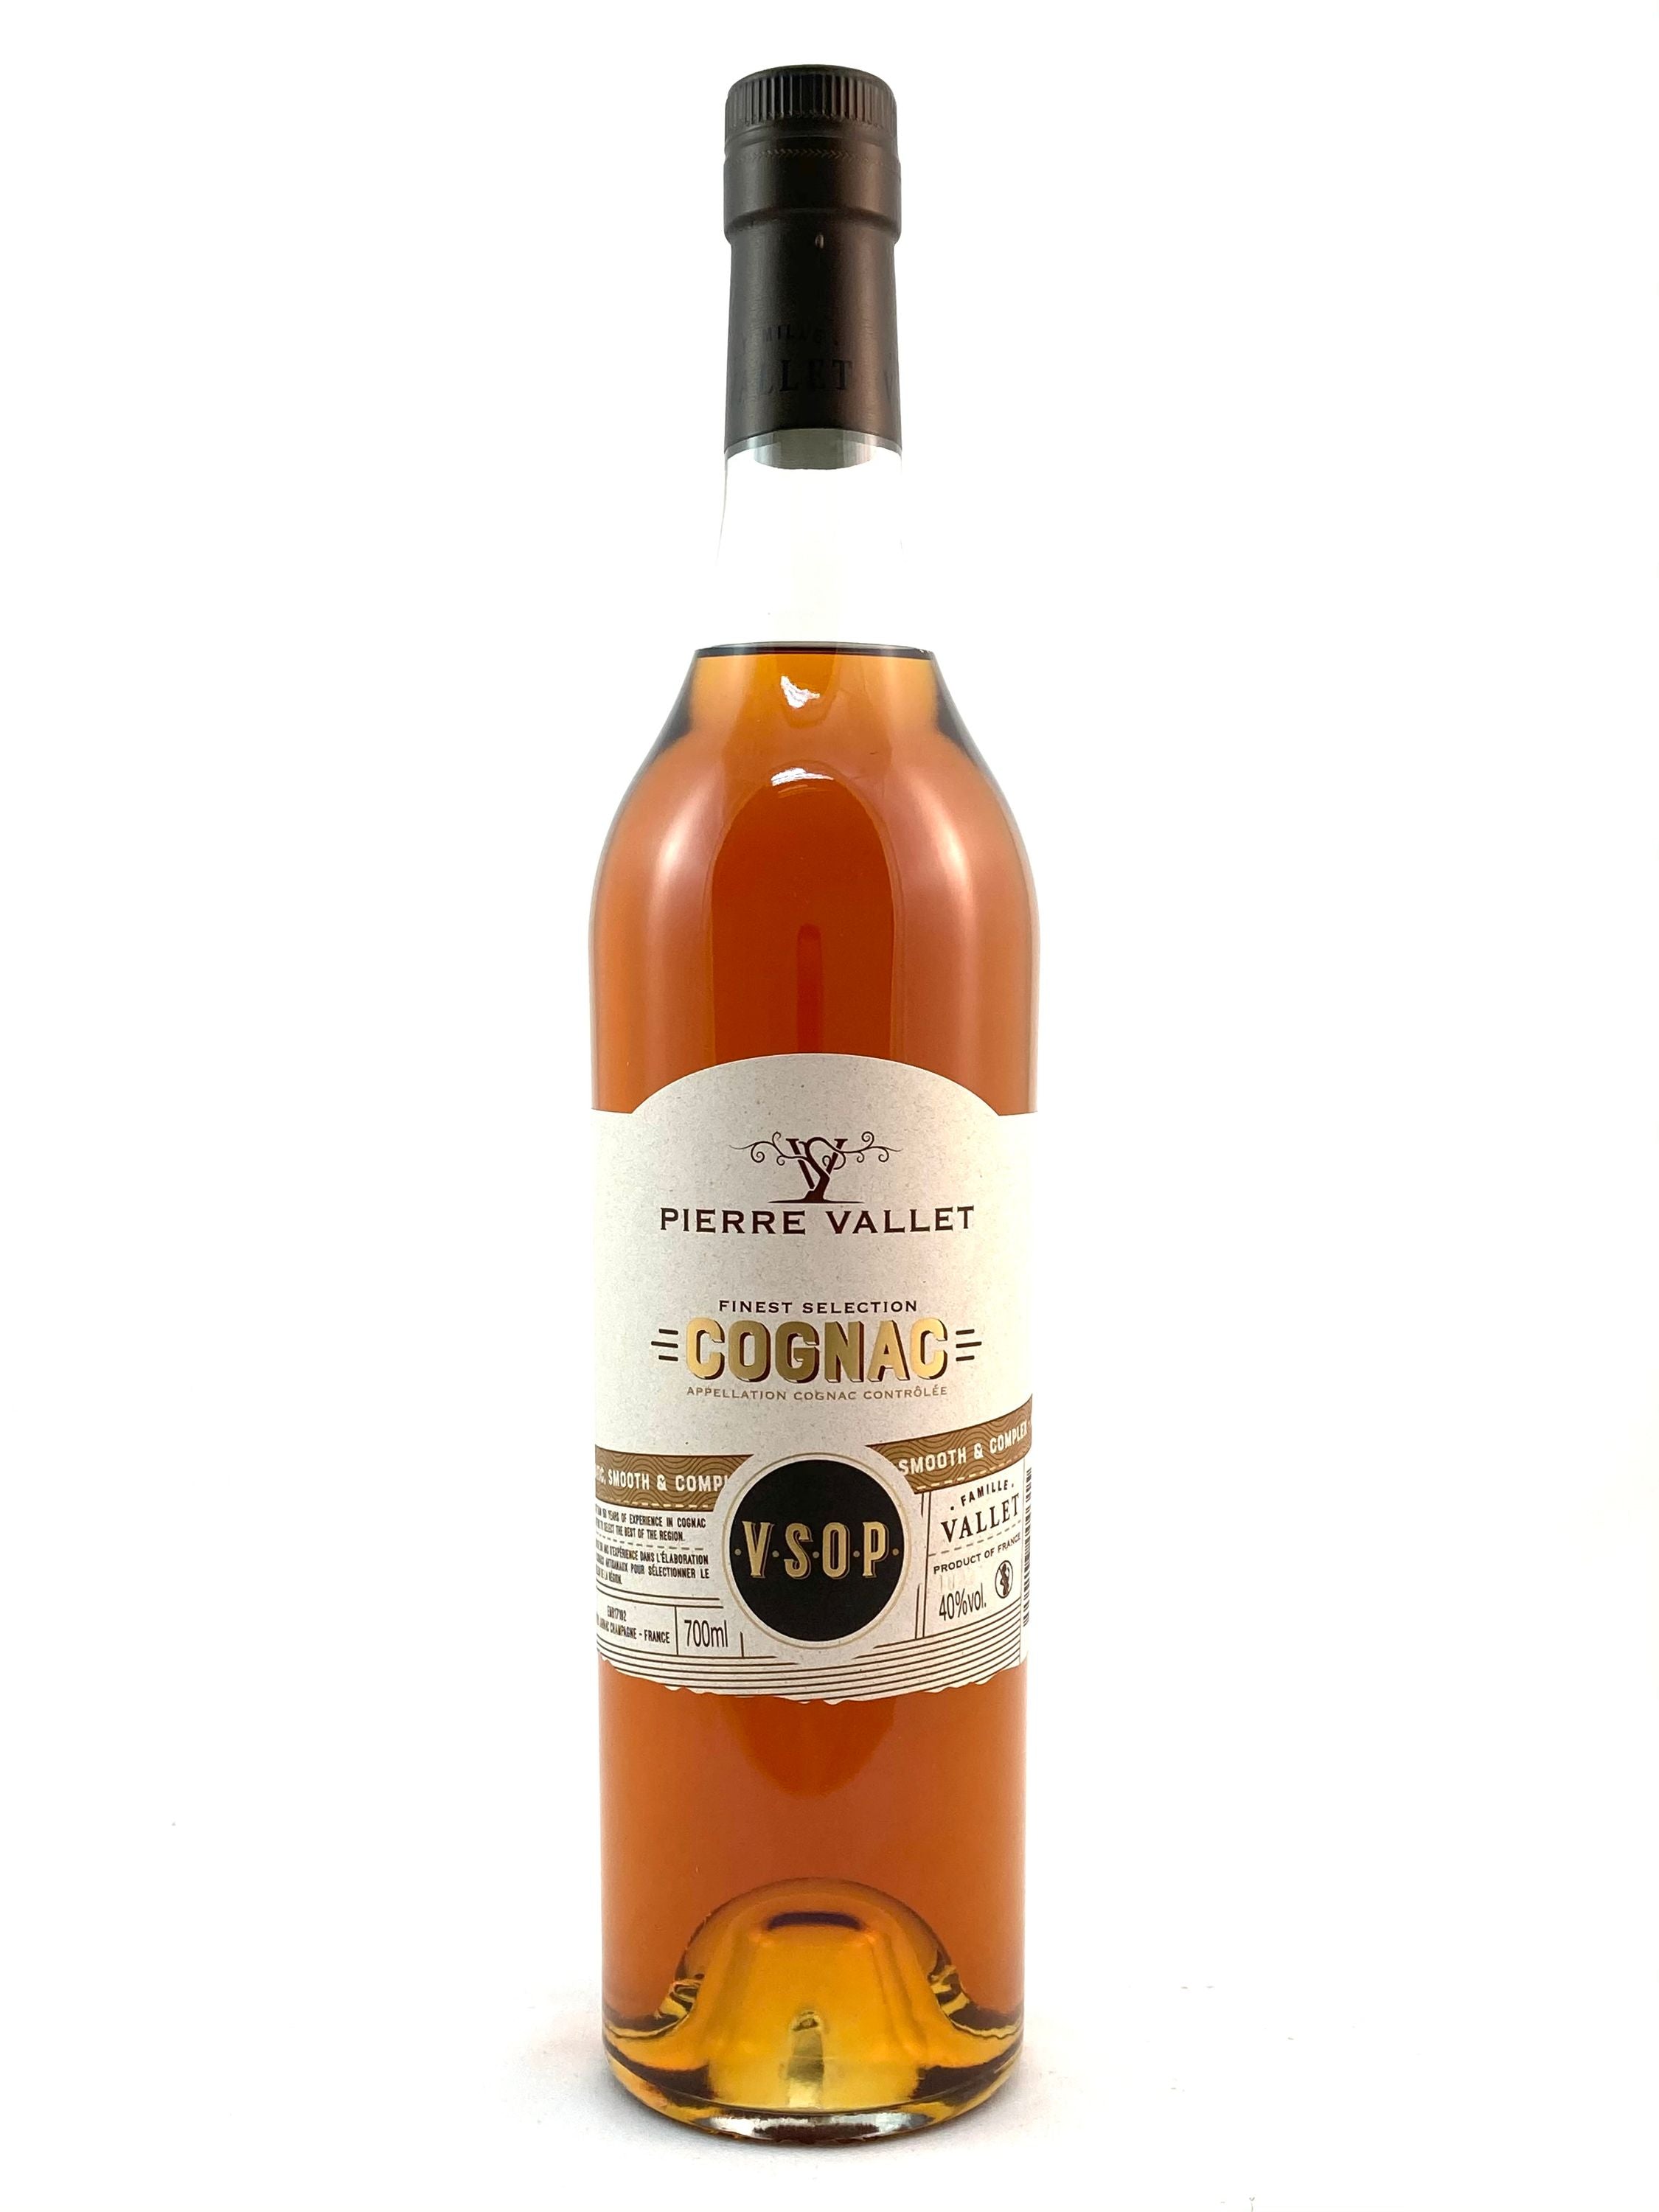 Pierre Vallet VSOP 0.7l, alc. 40% by volume, Cognac France